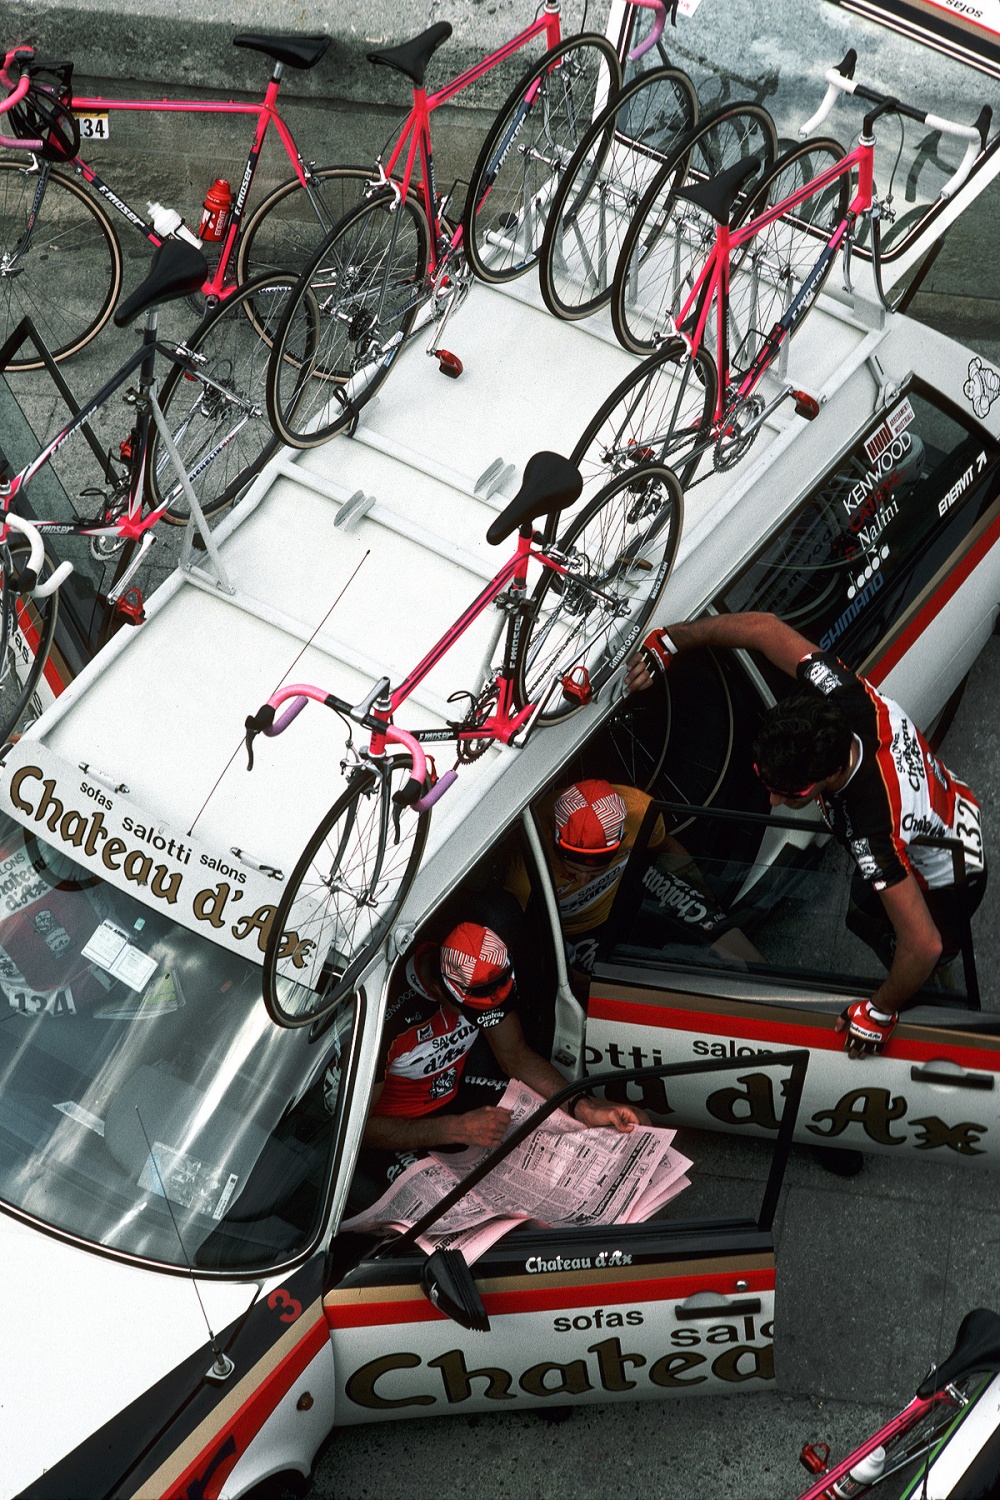 bill-hocker-cyclists-aix-en-provence-france-1990